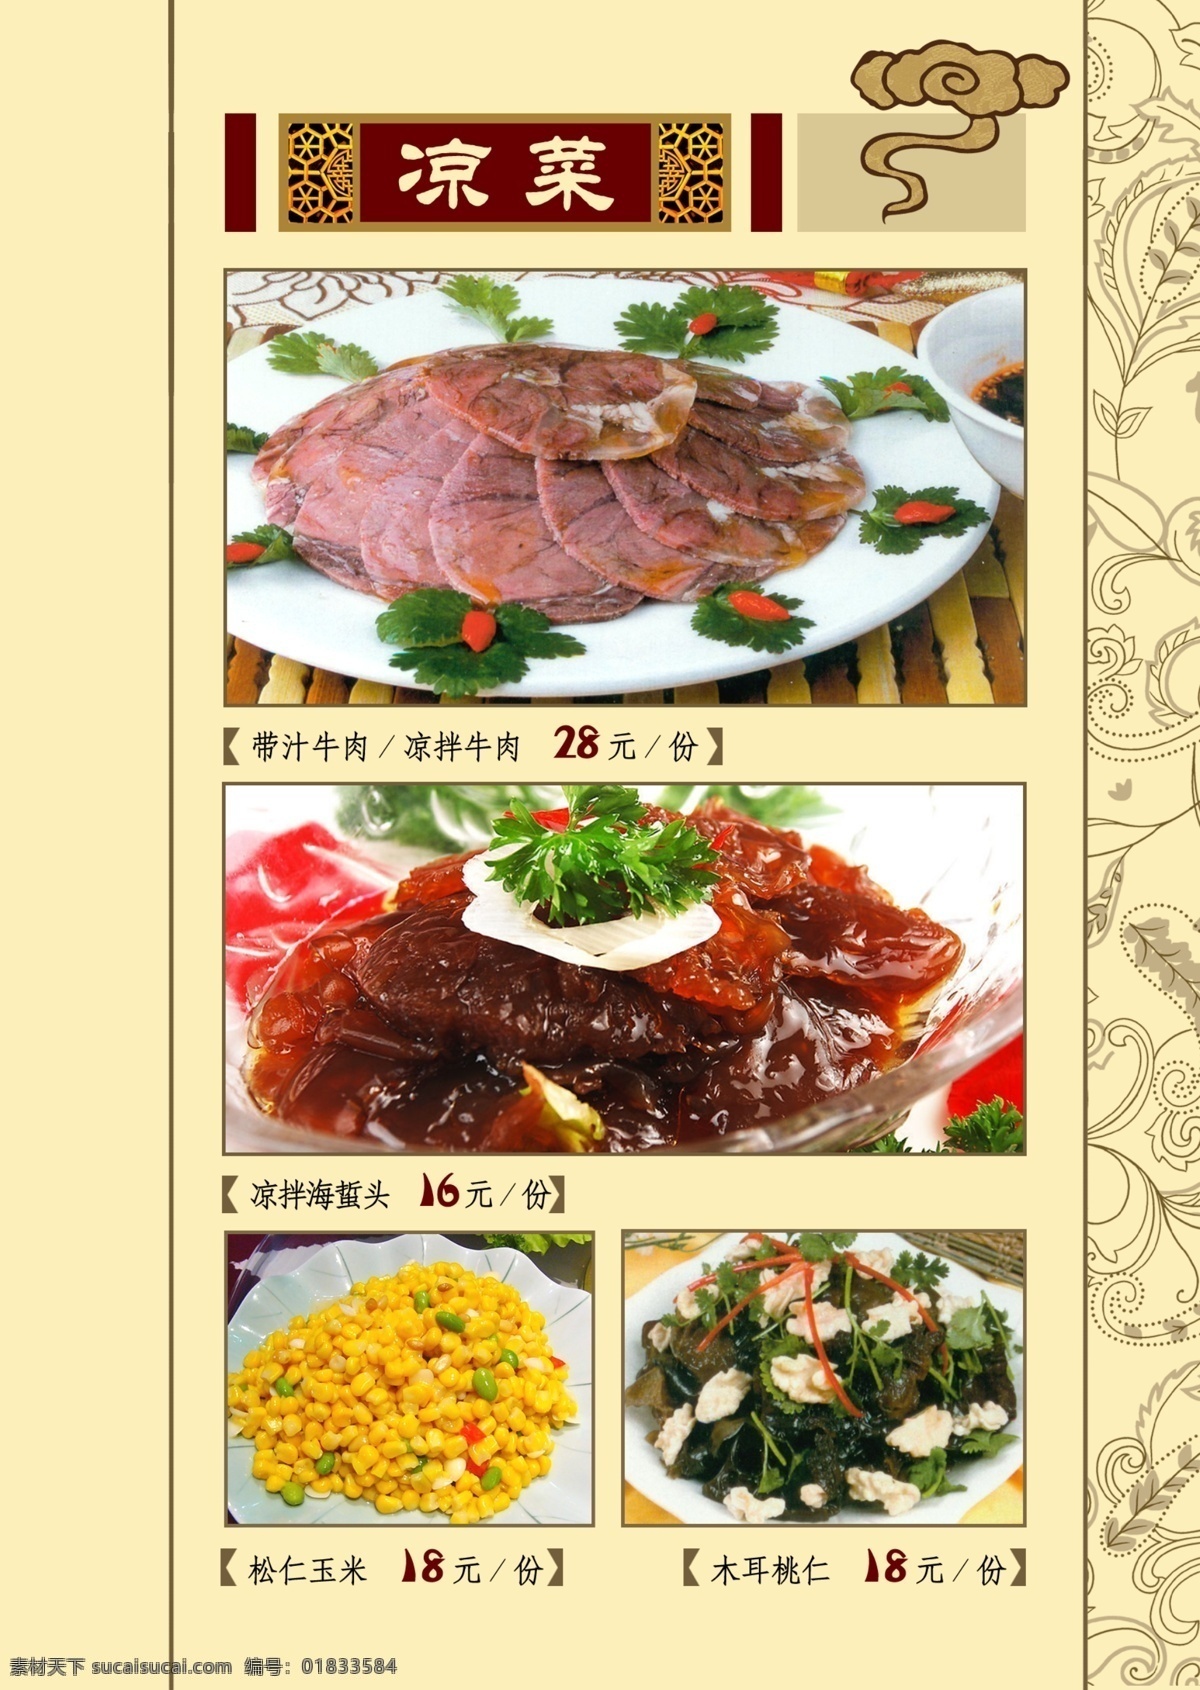 中餐 菜谱 背景 中国风 底纹 纹样 牛肉 玉米松仁 核桃 菜单菜谱 广告设计模板 源文件